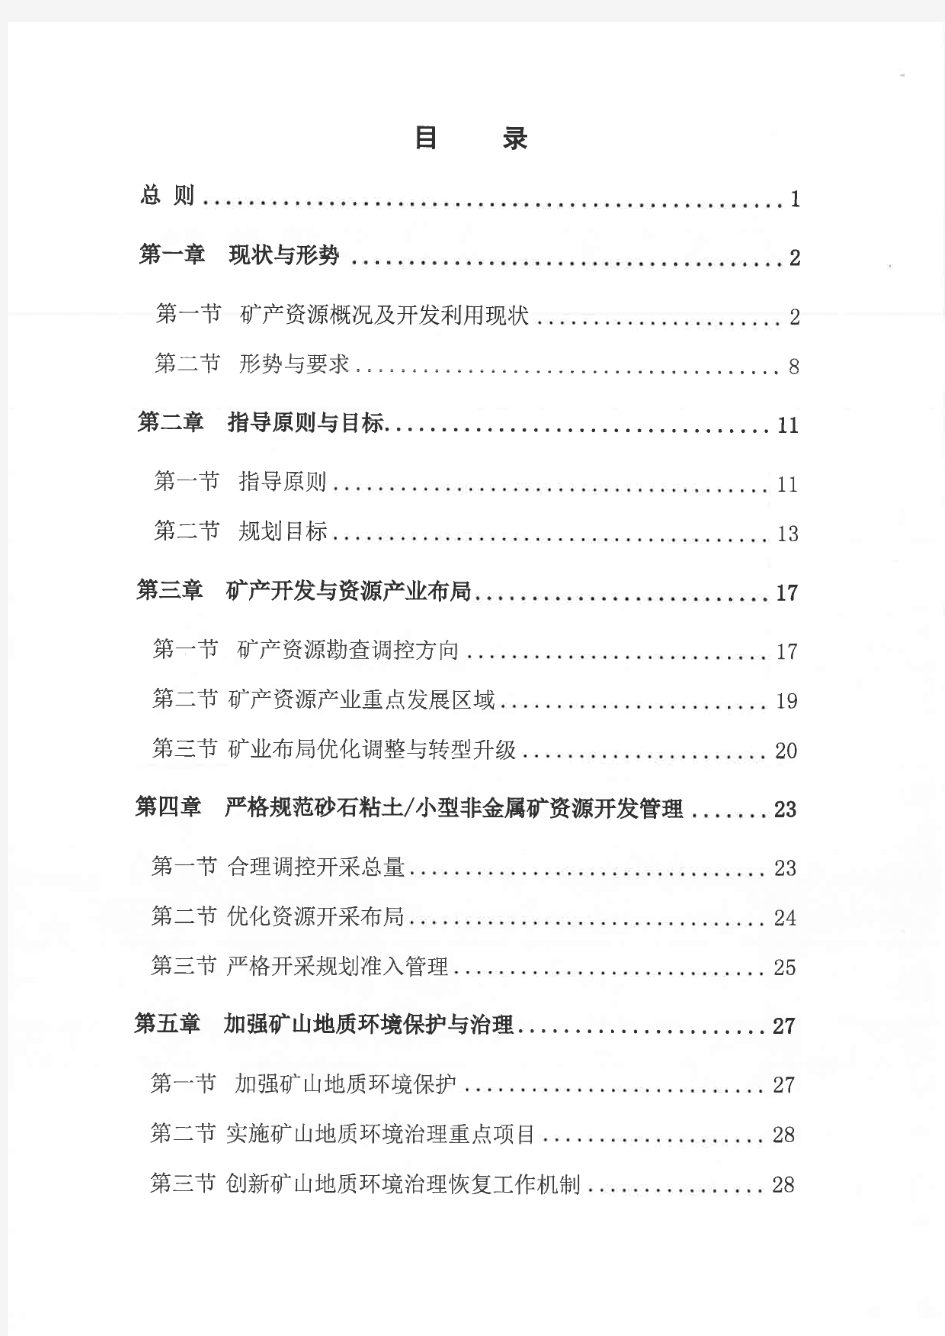 广安市矿产资源总体规划(2016-2020年)